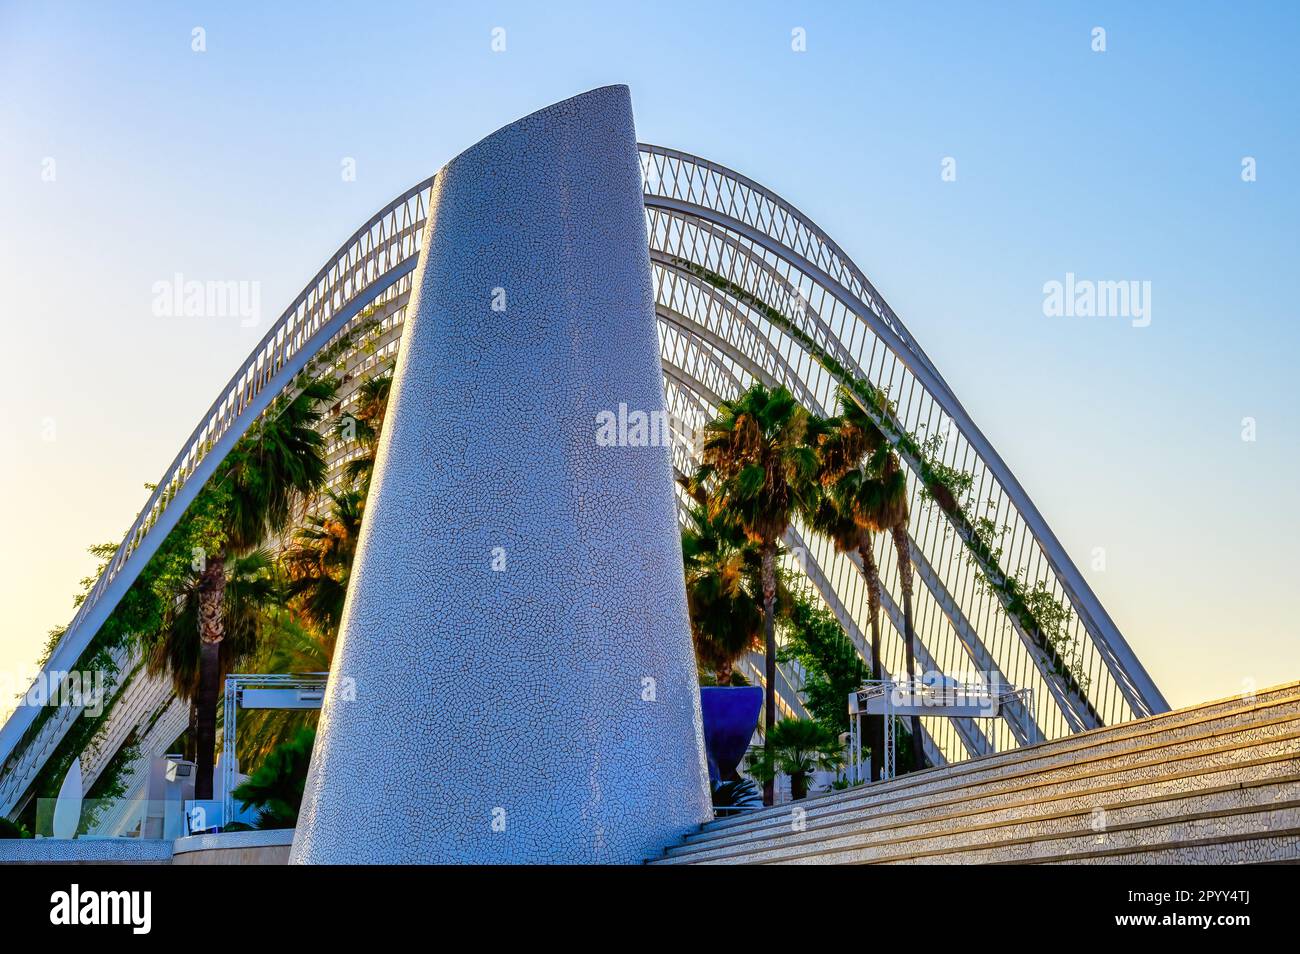 Valencia, Spagna - 17 luglio 2022: L'Umbracle edificio è cornice in scale o gradini decorati con una scultura moderna. Foto Stock